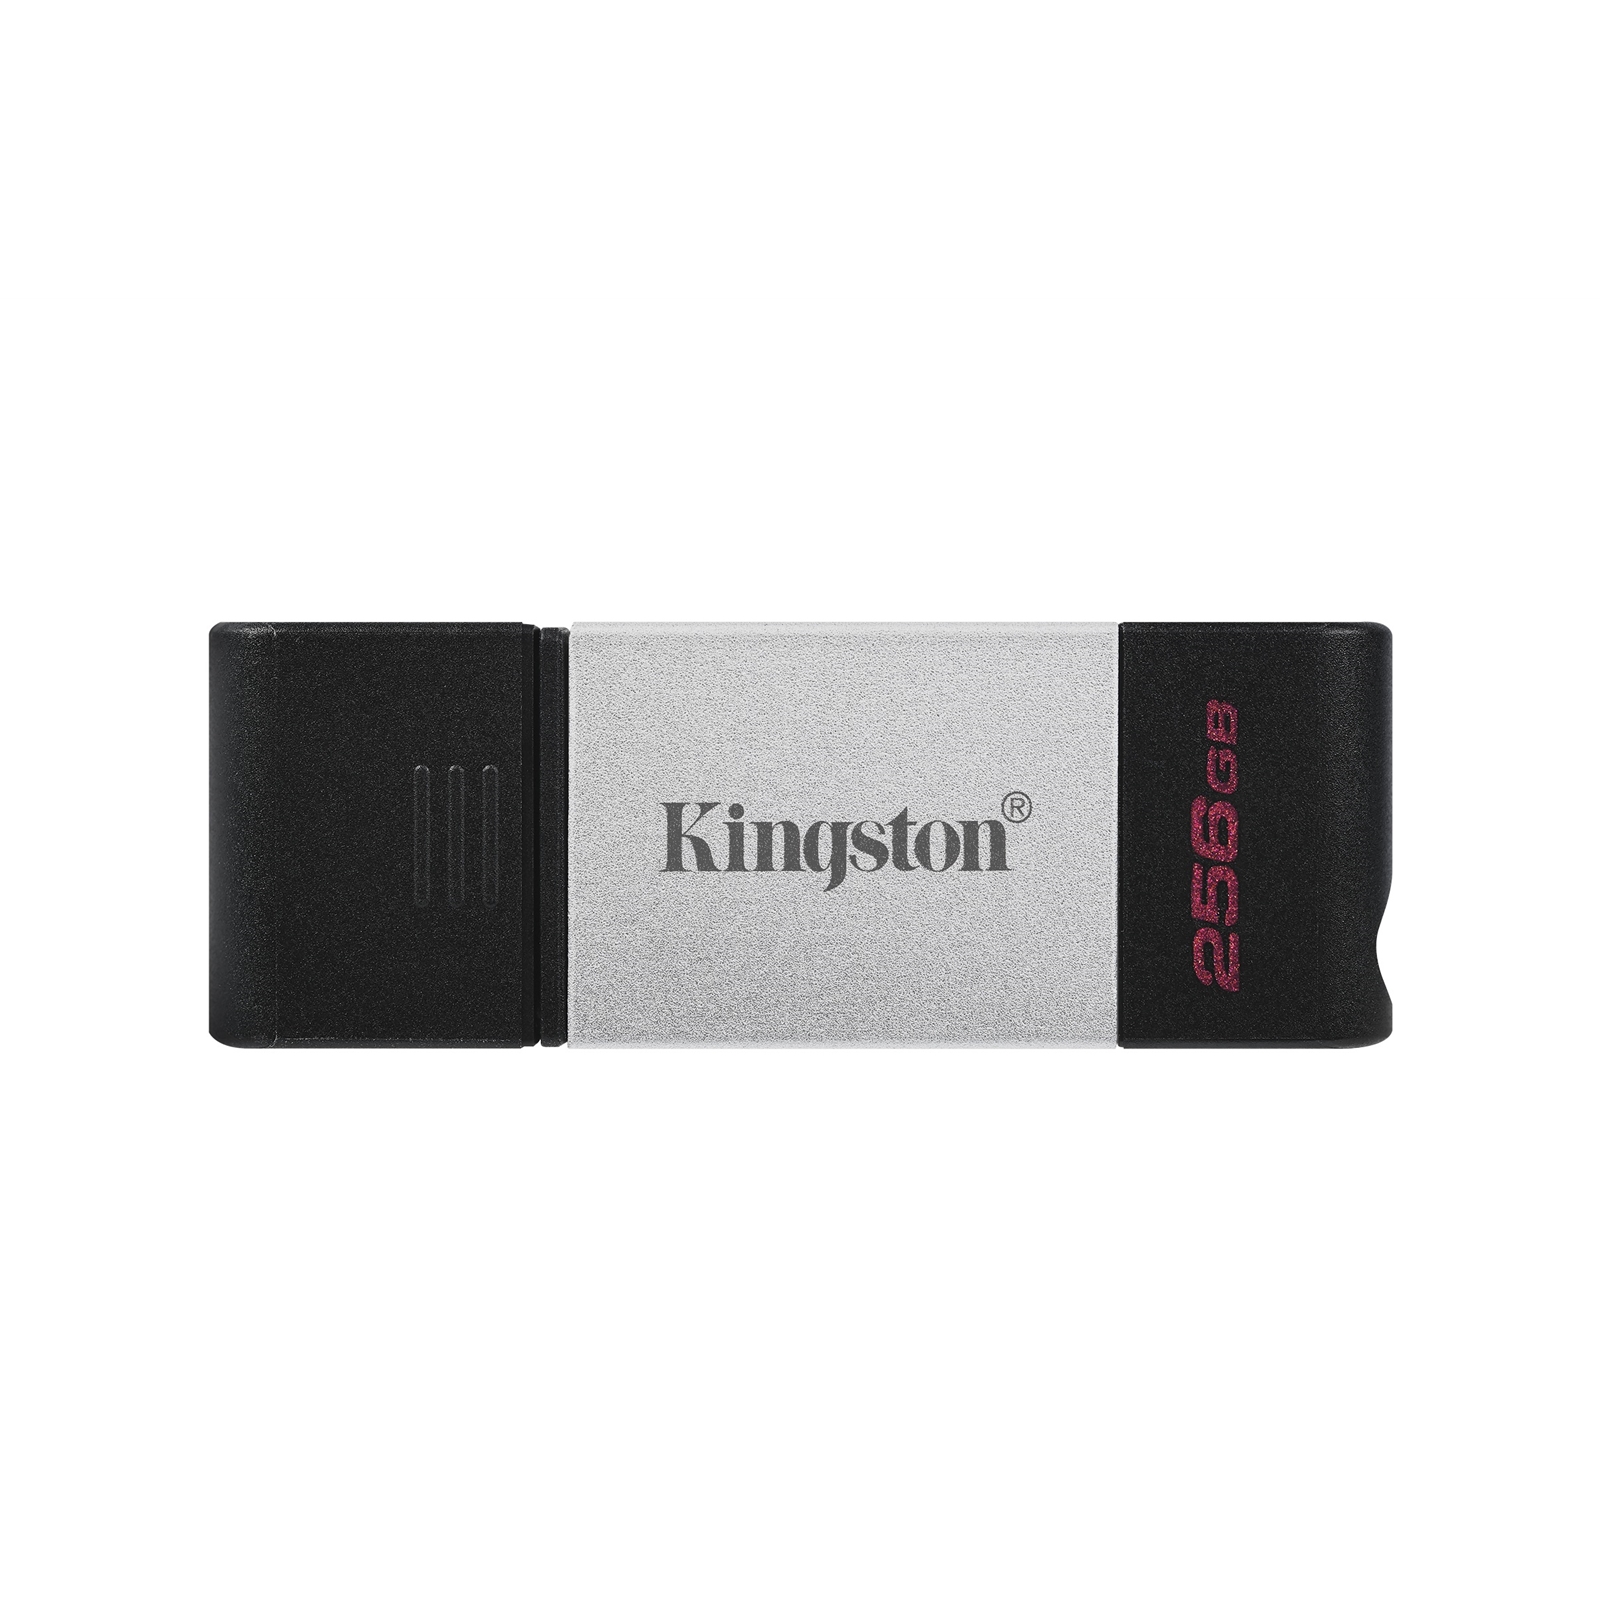 Kingston DataTraveler 80 256 GB USB 3.2 USB-C Metal Grey / Black USB Flash Drive